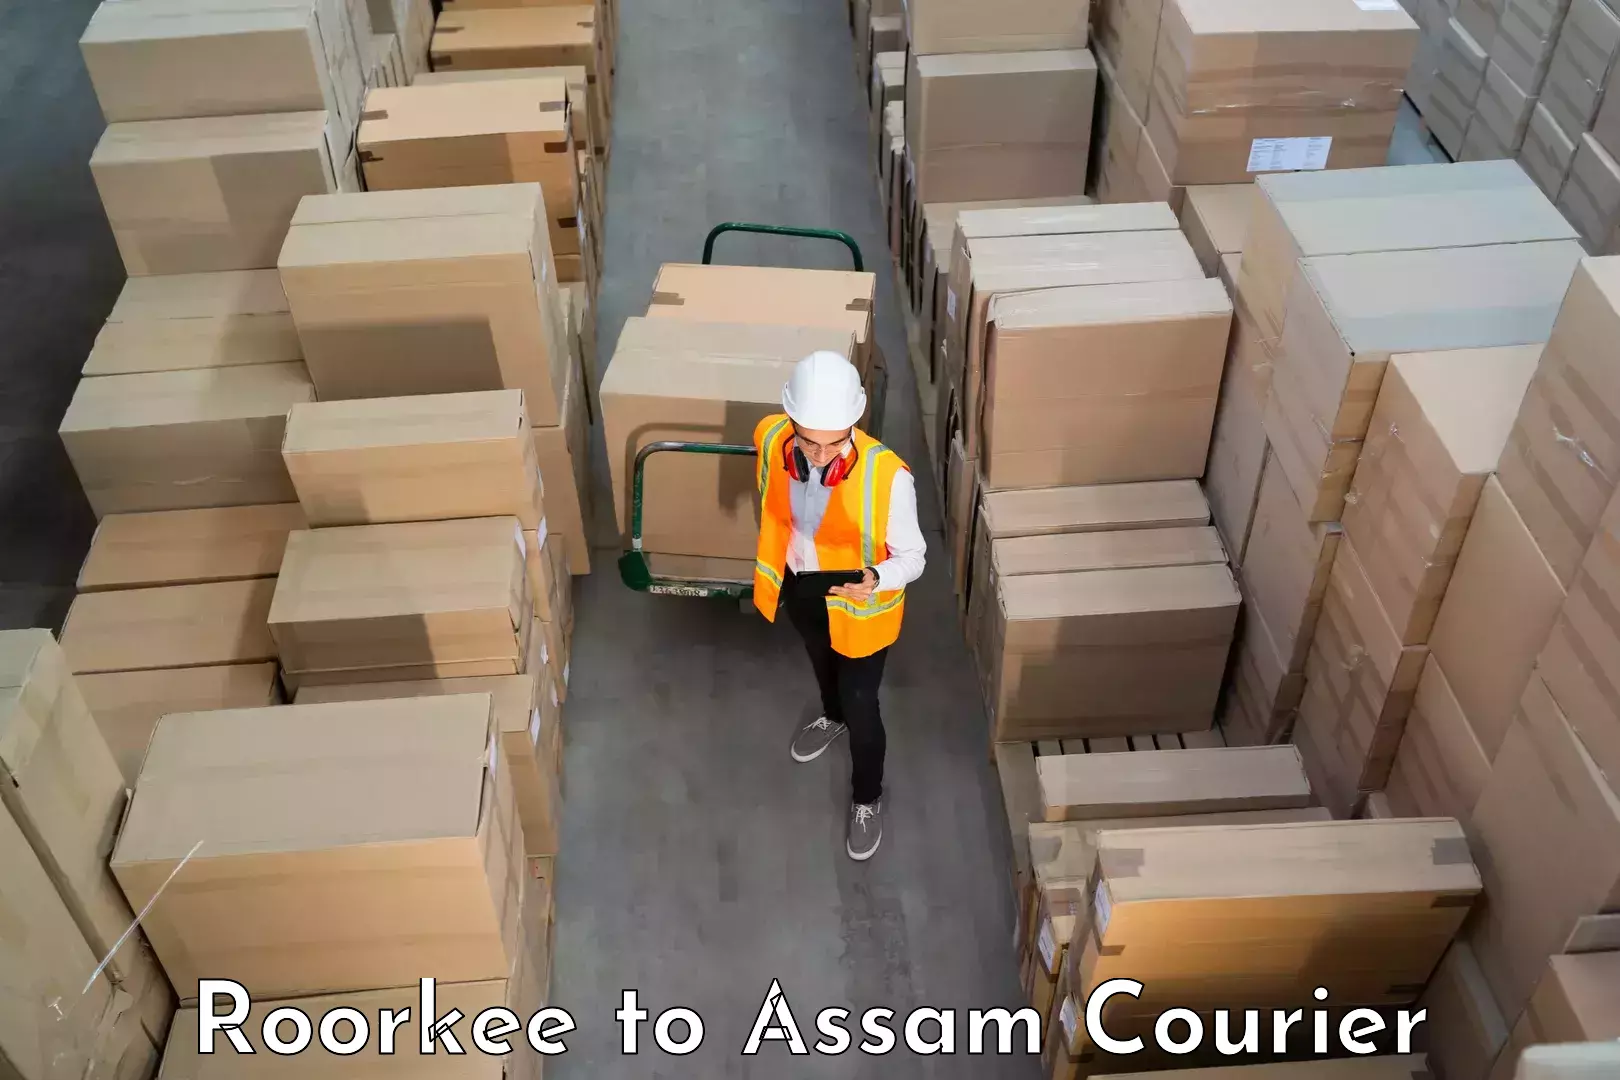 Skilled furniture transport Roorkee to Assam